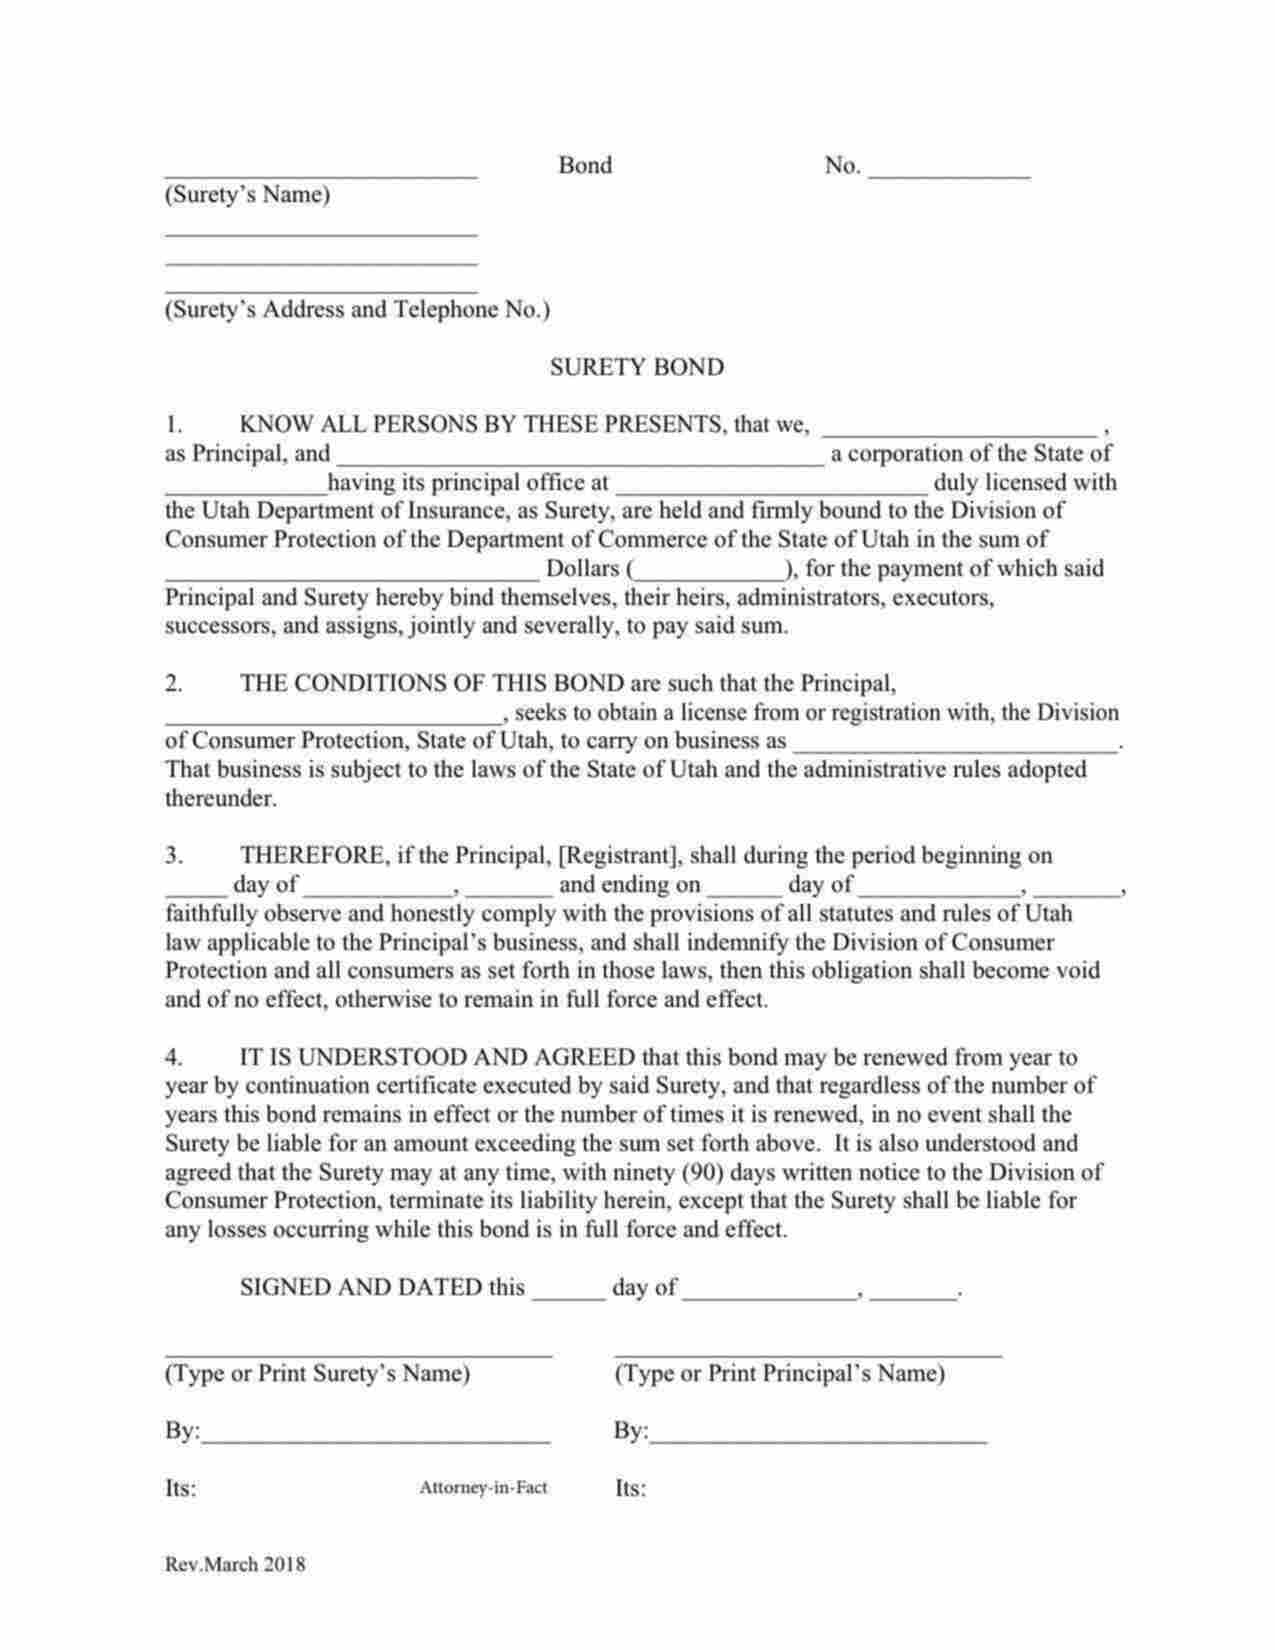 Utah Immigration Consultant Bond Form